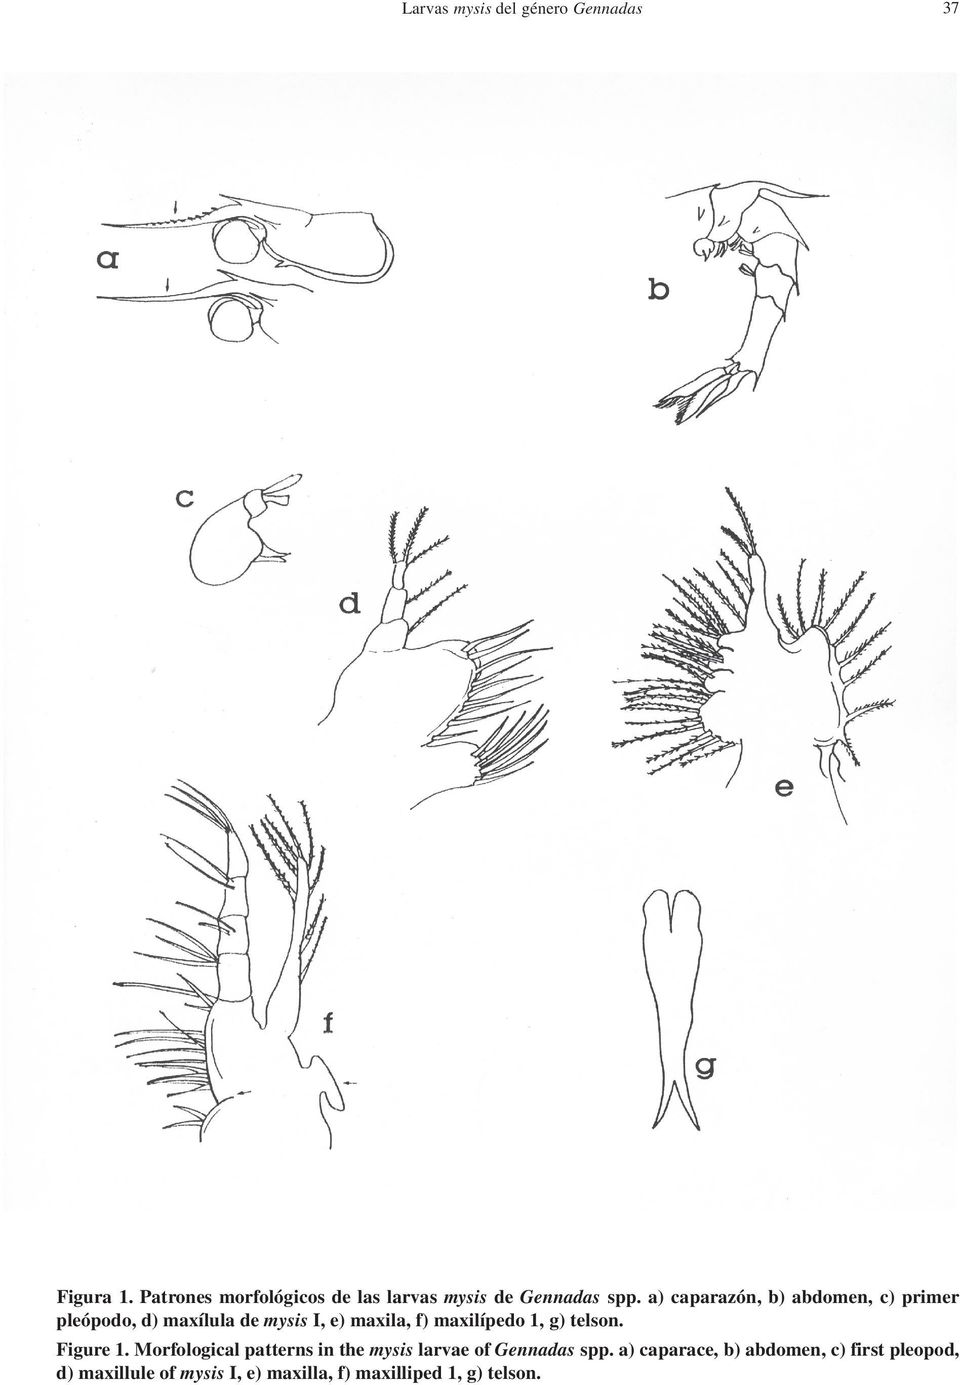 a) caparazón, b) abdomen, c) primer pleópodo, d) maxílula de mysis I, e) maxila, f) maxilípedo 1,